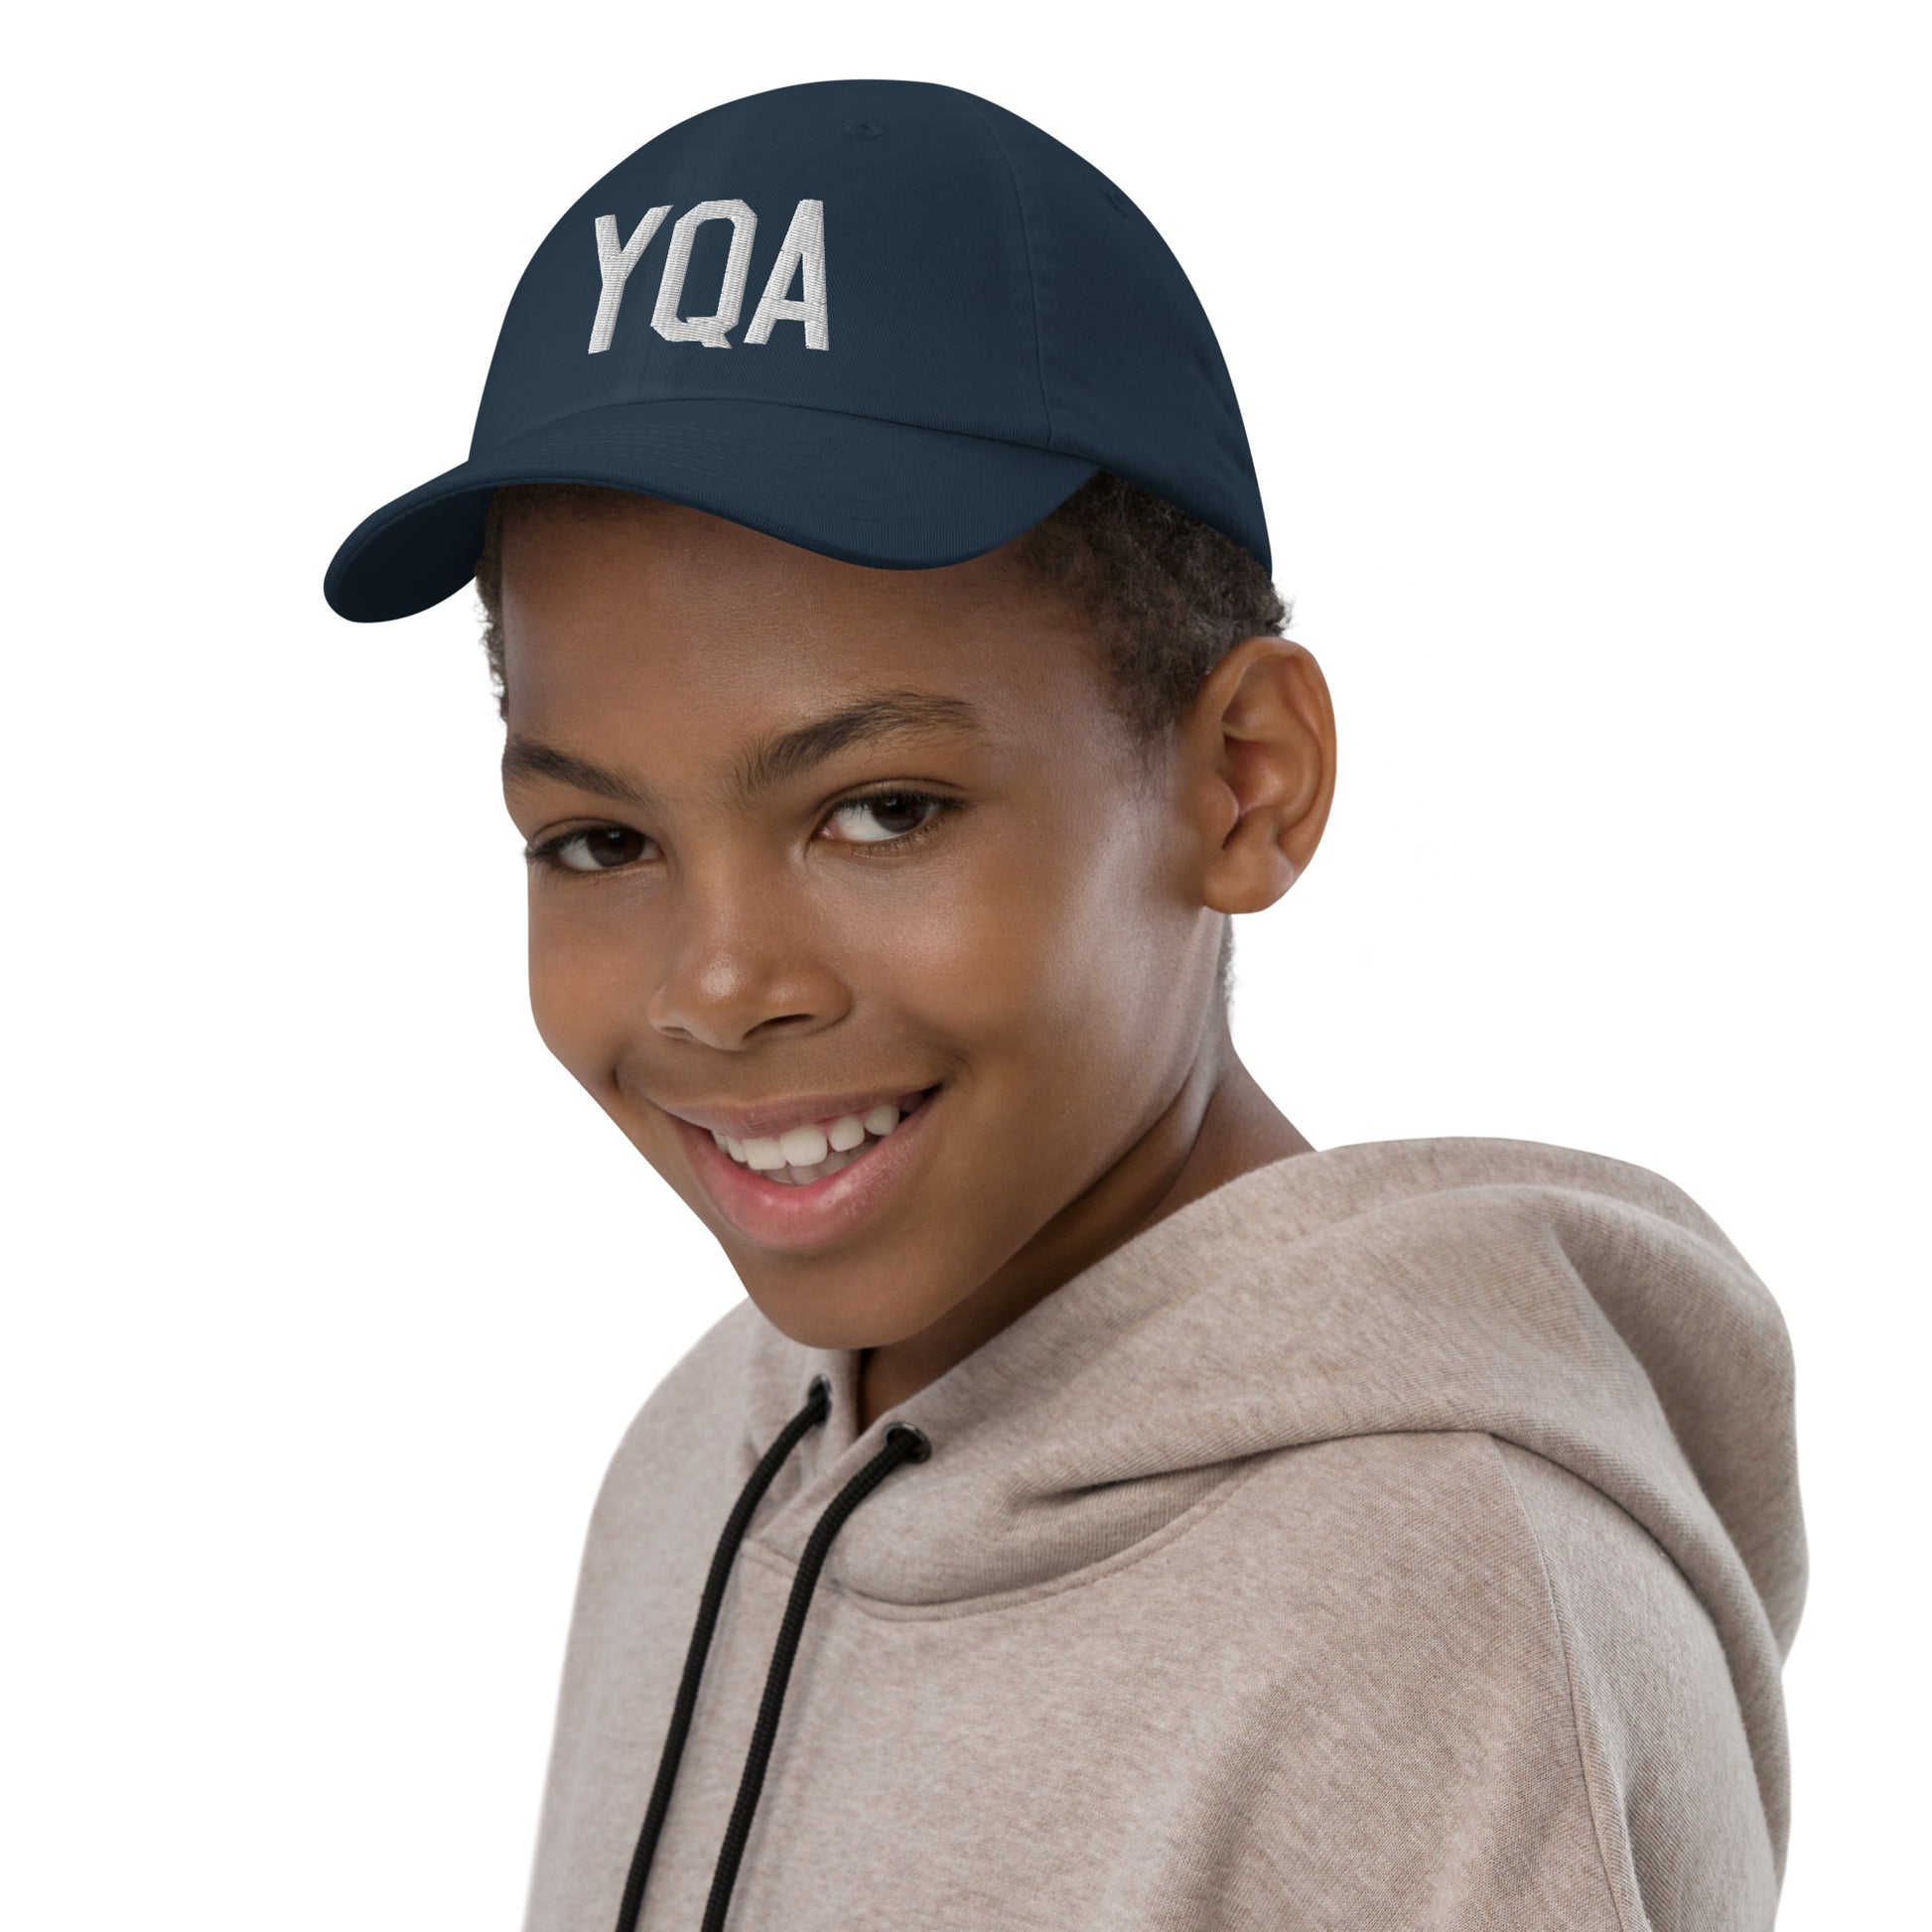 Airport Code Kid's Baseball Cap - White • YQA Muskoka • YHM Designs - Image 03